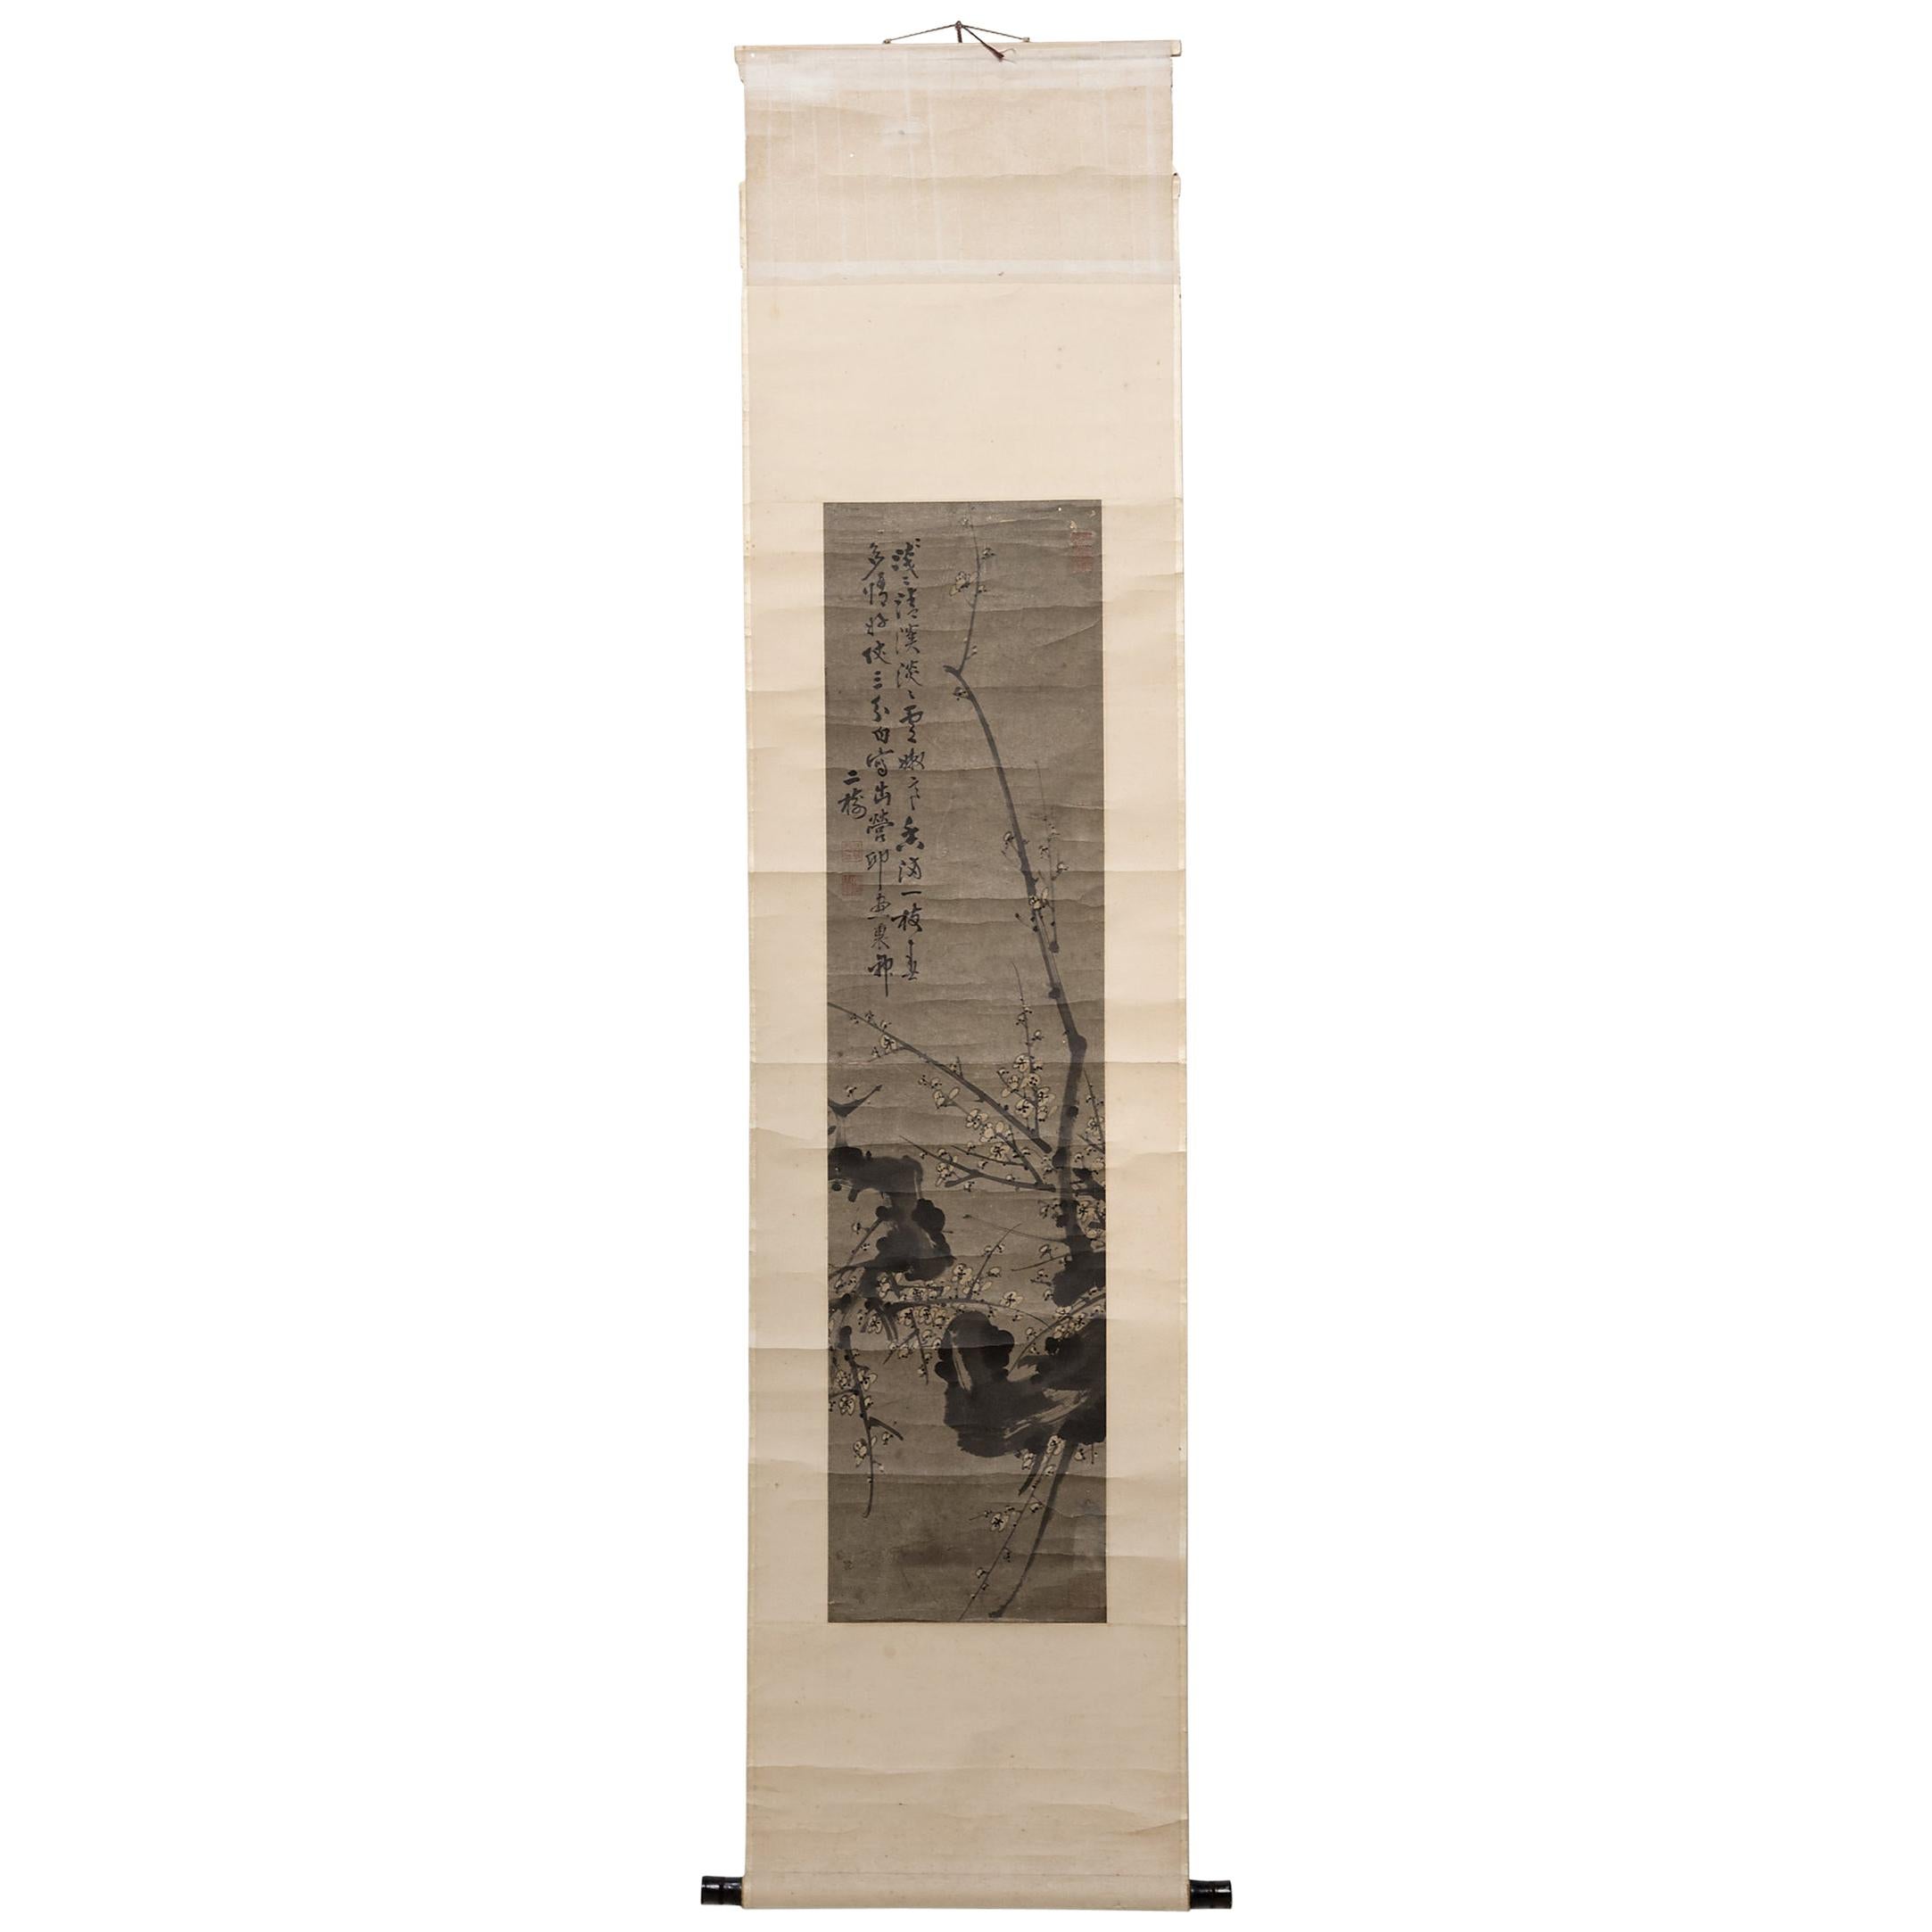 Rouleau suspendu chinois représentant des branches de prunus:: vers 1850